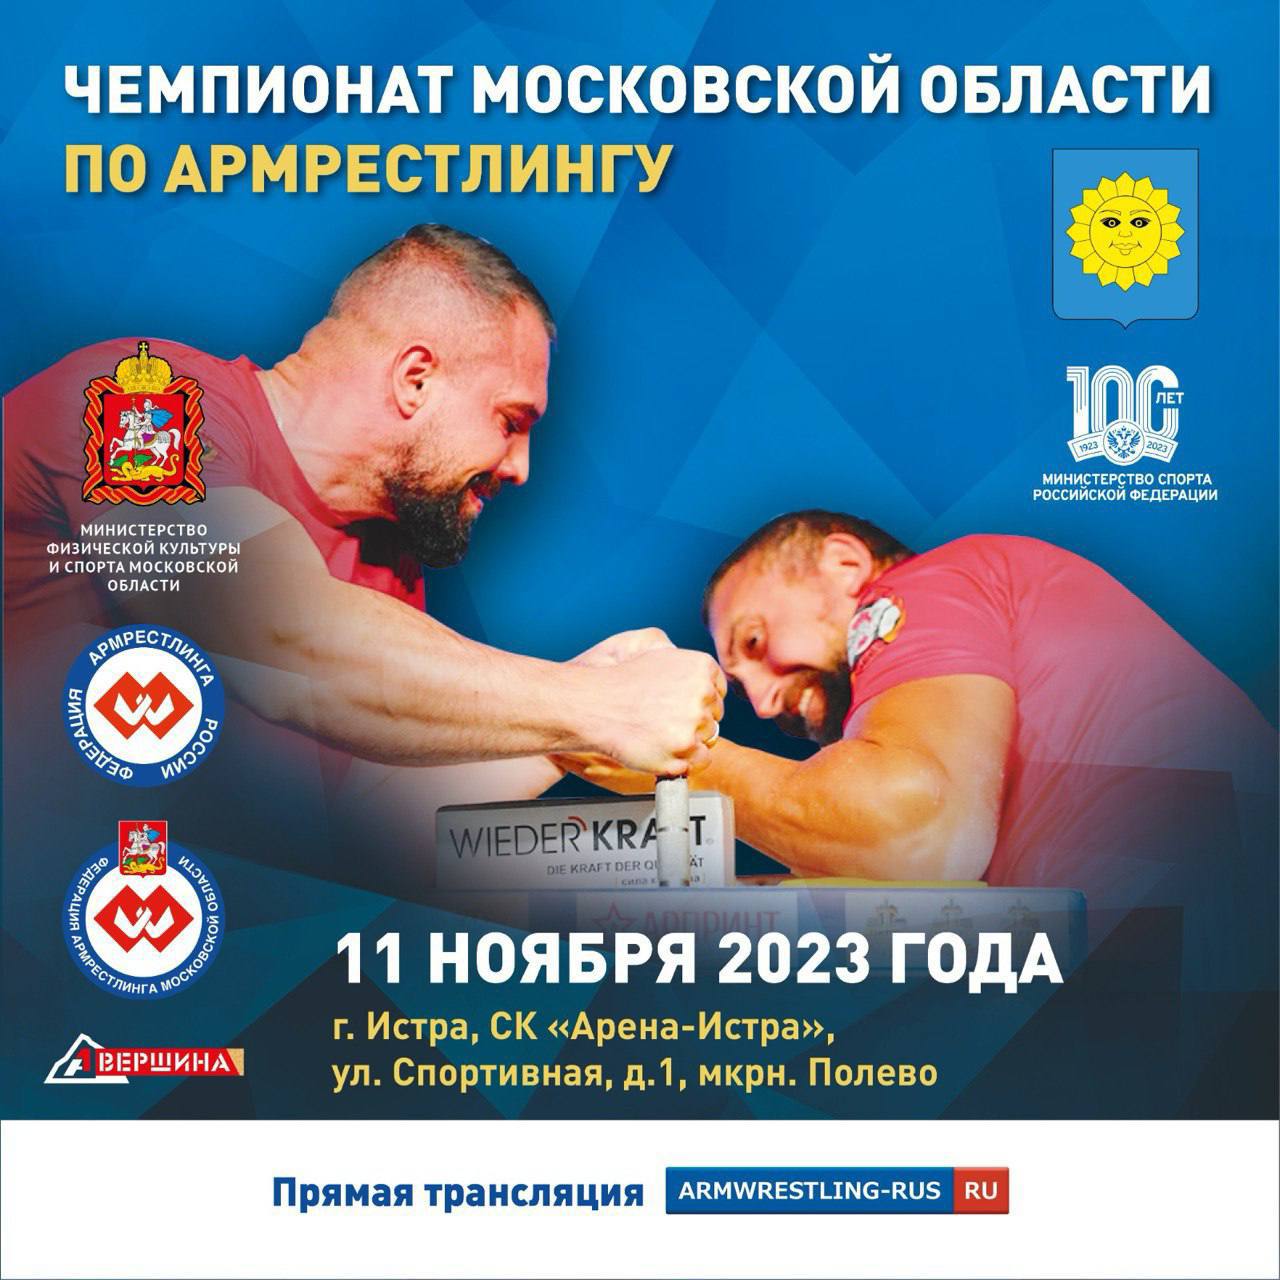 Более 160 спортсменов примут участие в чемпионате Московской области по армрестлингу